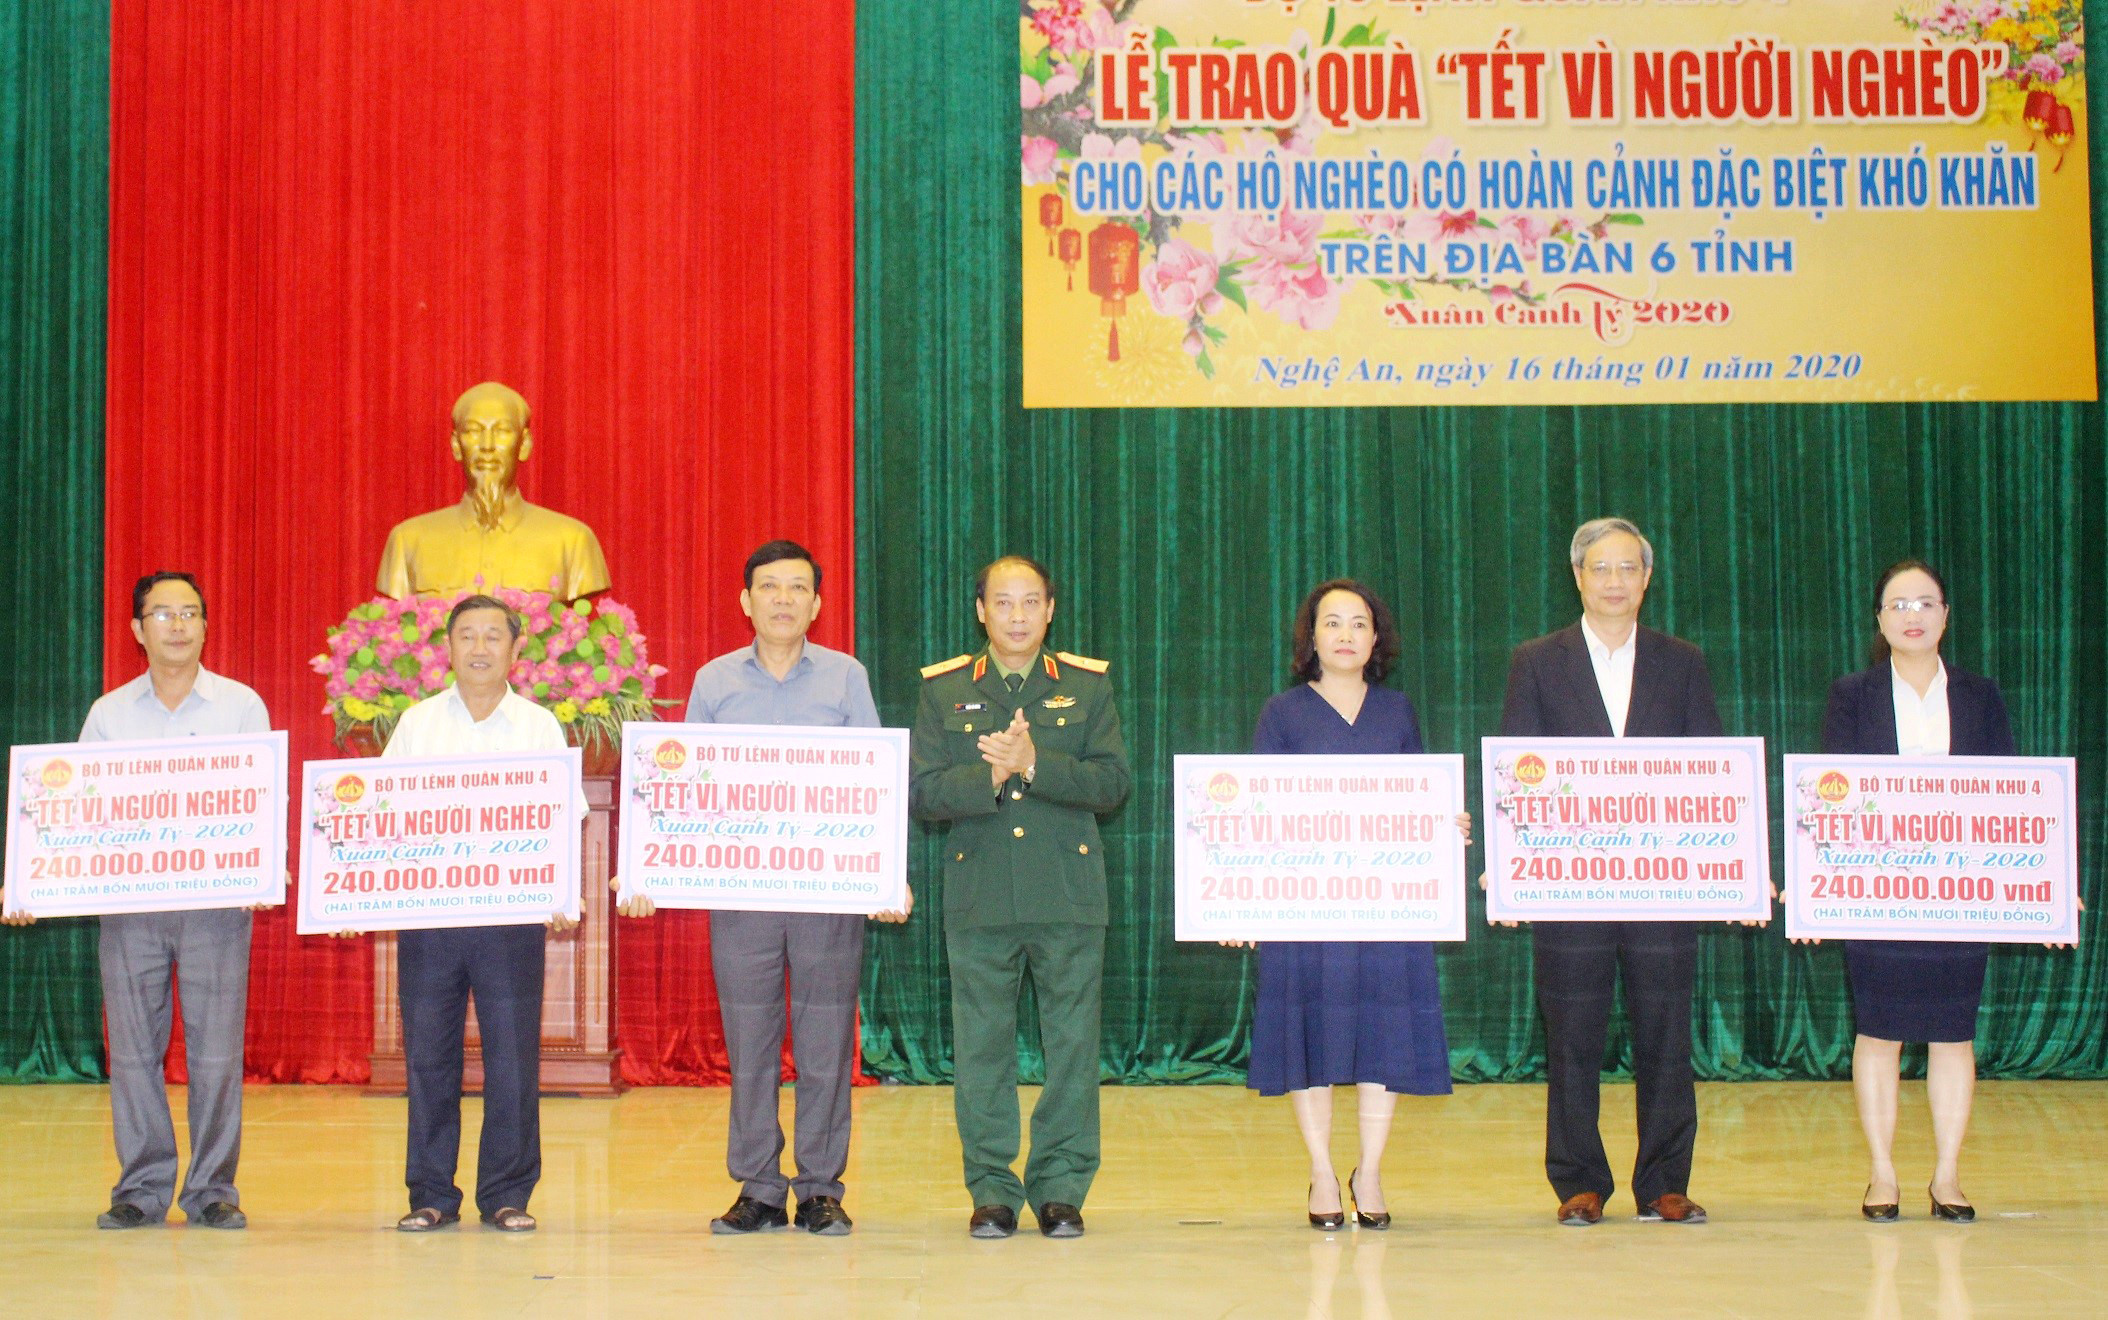 Thiếu tướng Trần Võ Dũng - Bí thư Đảng ủy, Chính ủy Quân khu 4 trao quà của Quân khu cho đại diện Ủy ban Mặt trận Tổ quốc 6 tỉnh. Ảnh: 